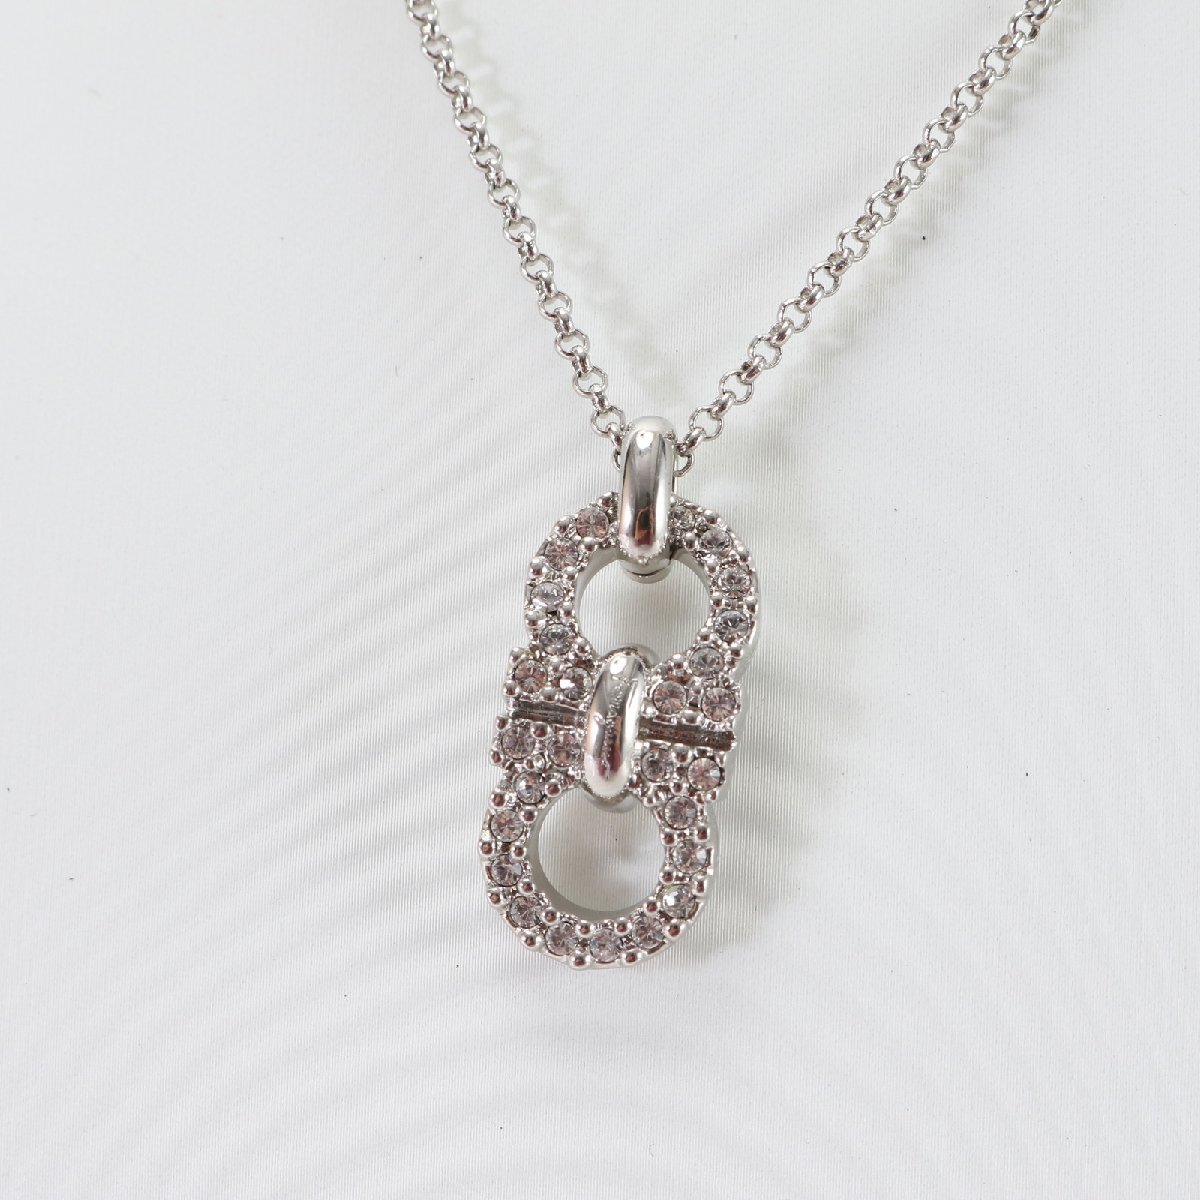 1 jpy # ultimate beautiful goods # Salvatore Ferragamo # double gun chi-ni necklace rhinestone silver pendant lady's EEM 0301-E35